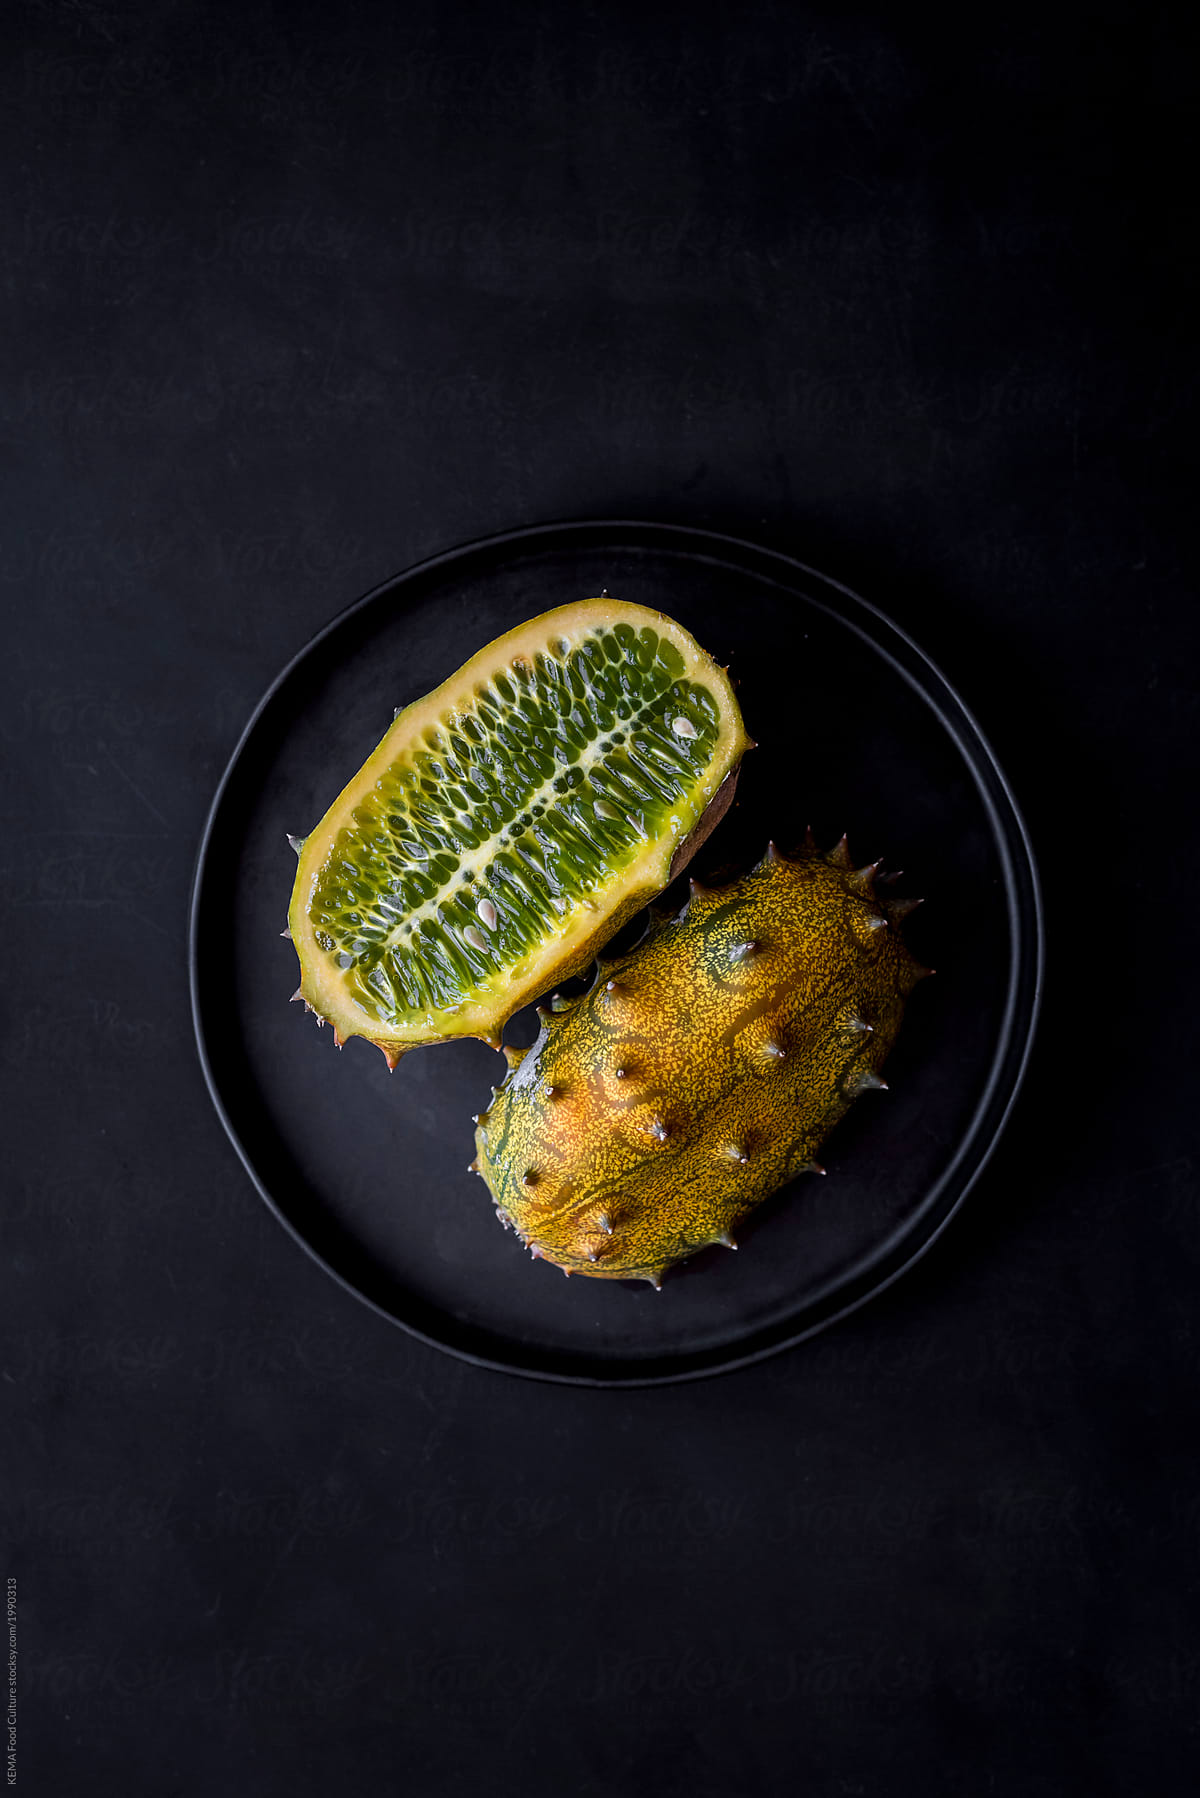 Kiwano - Horned melon